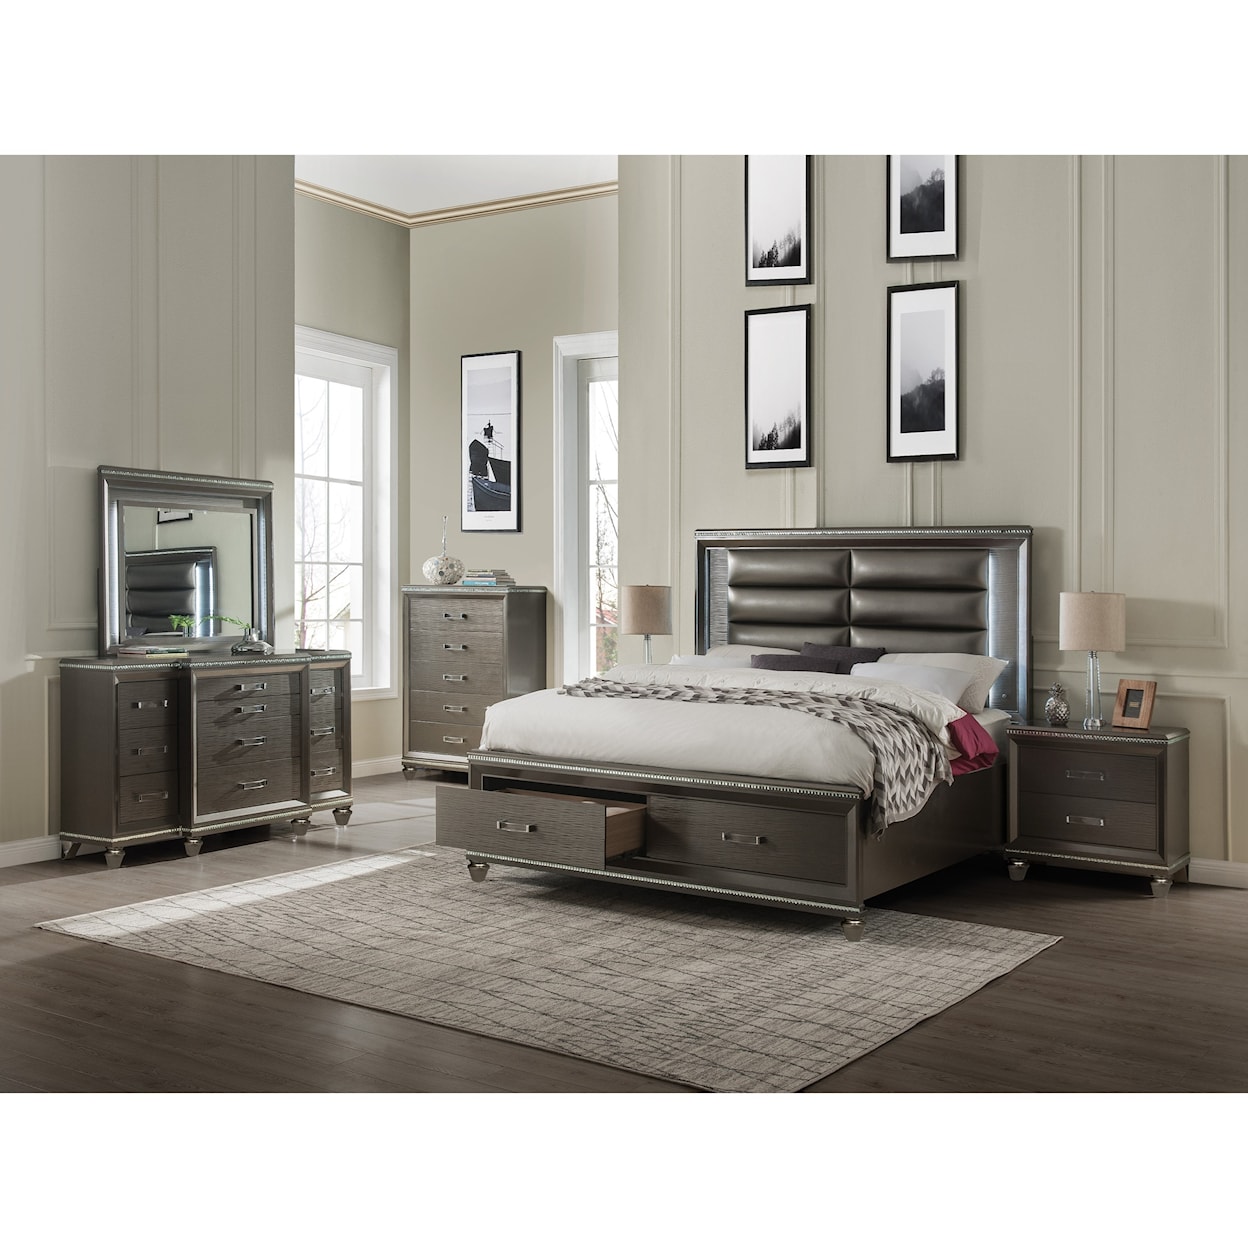 Acme Furniture Sadie King Bedroom Group